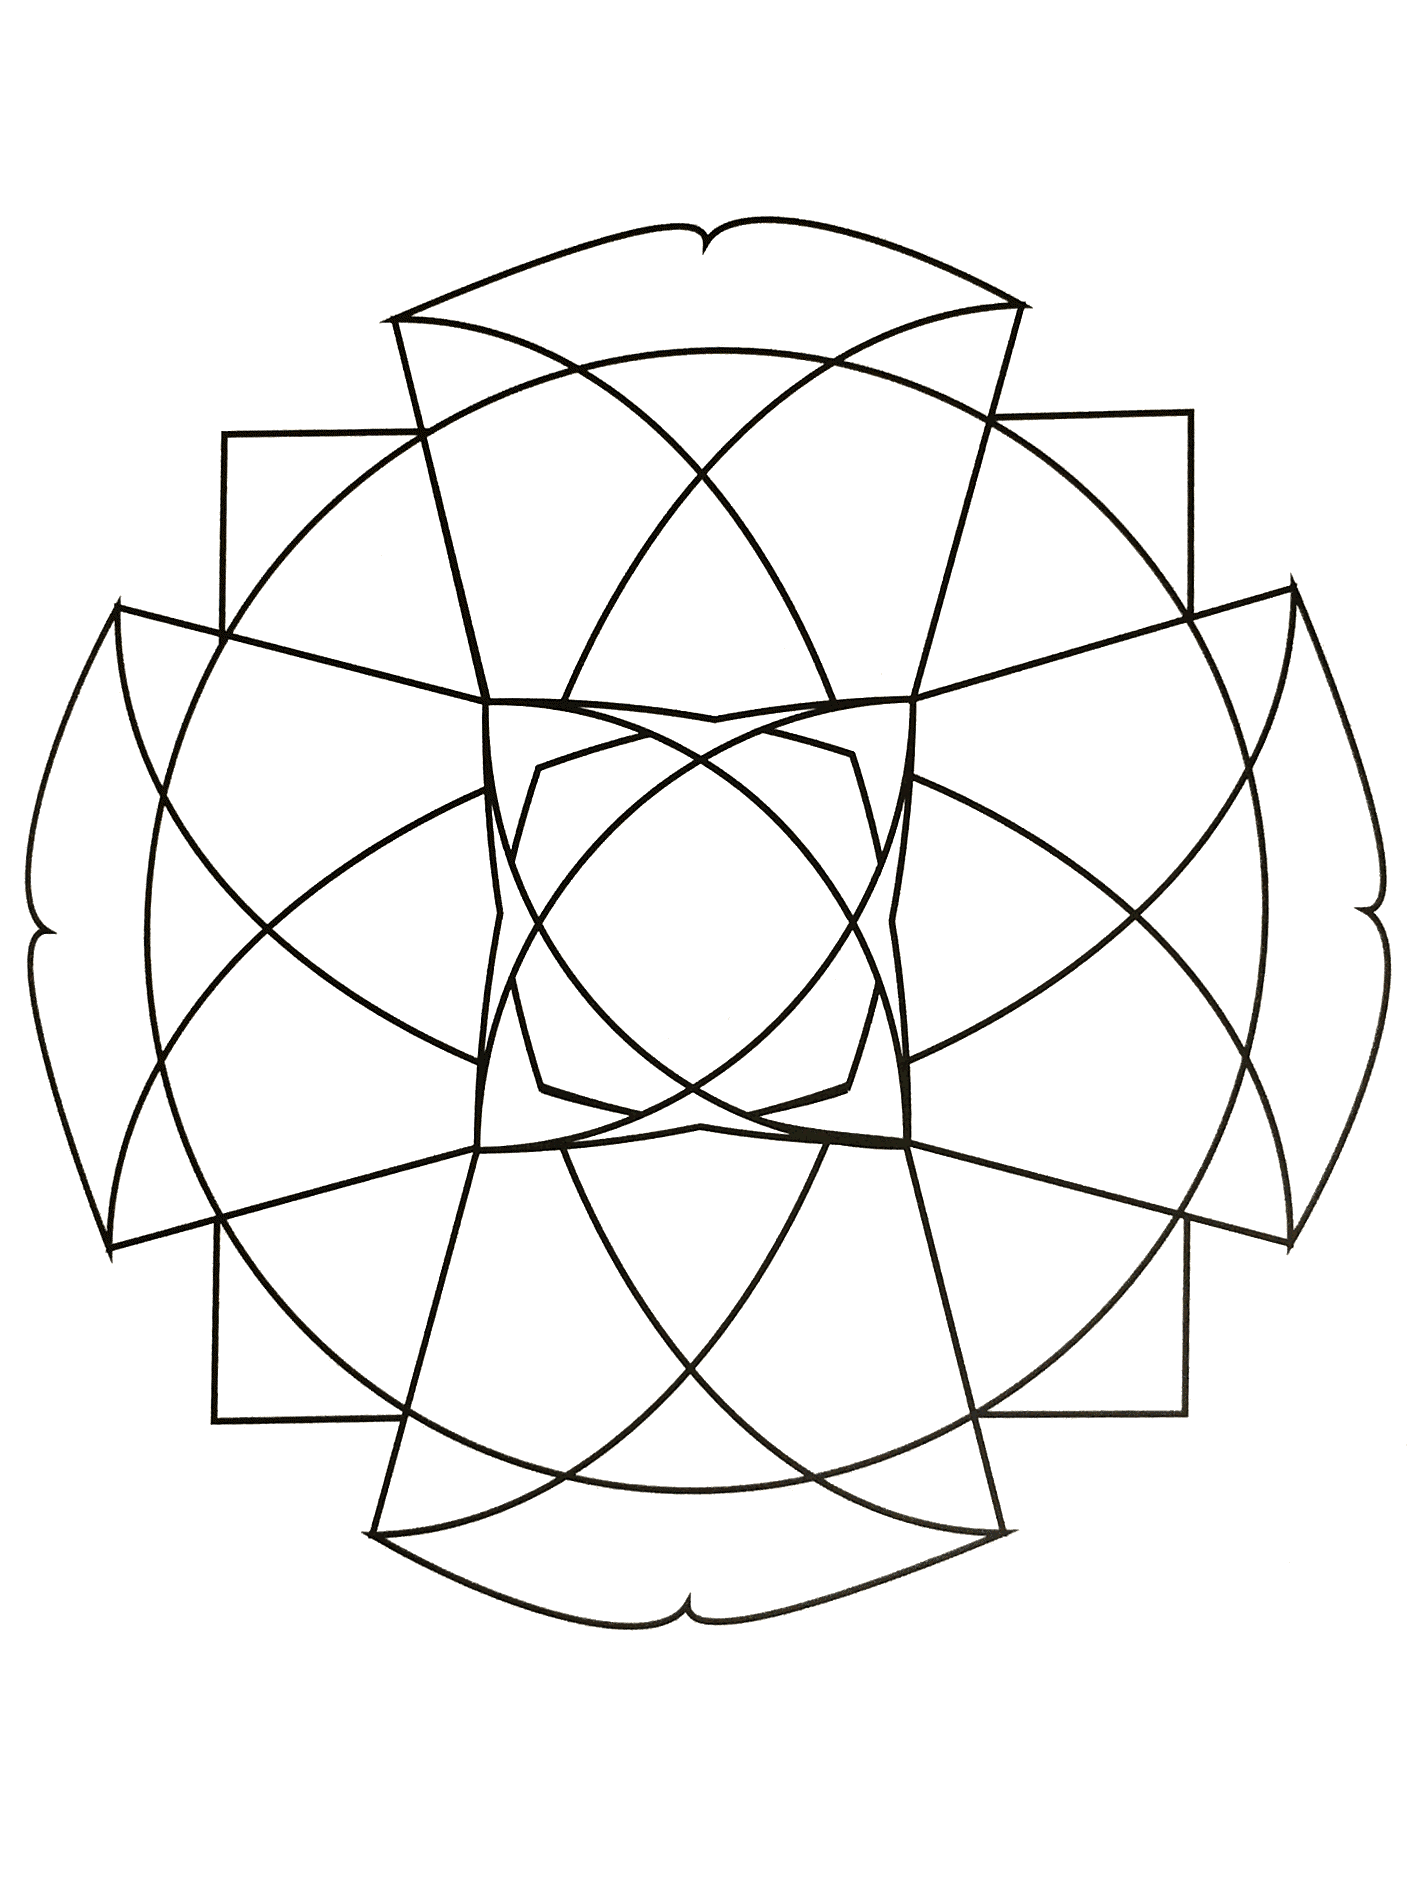 Mandala zum Ausdrucken, das ein großes Kreuz sowie andere geometrische Formen (Dreieck, Raute...) darstellt.